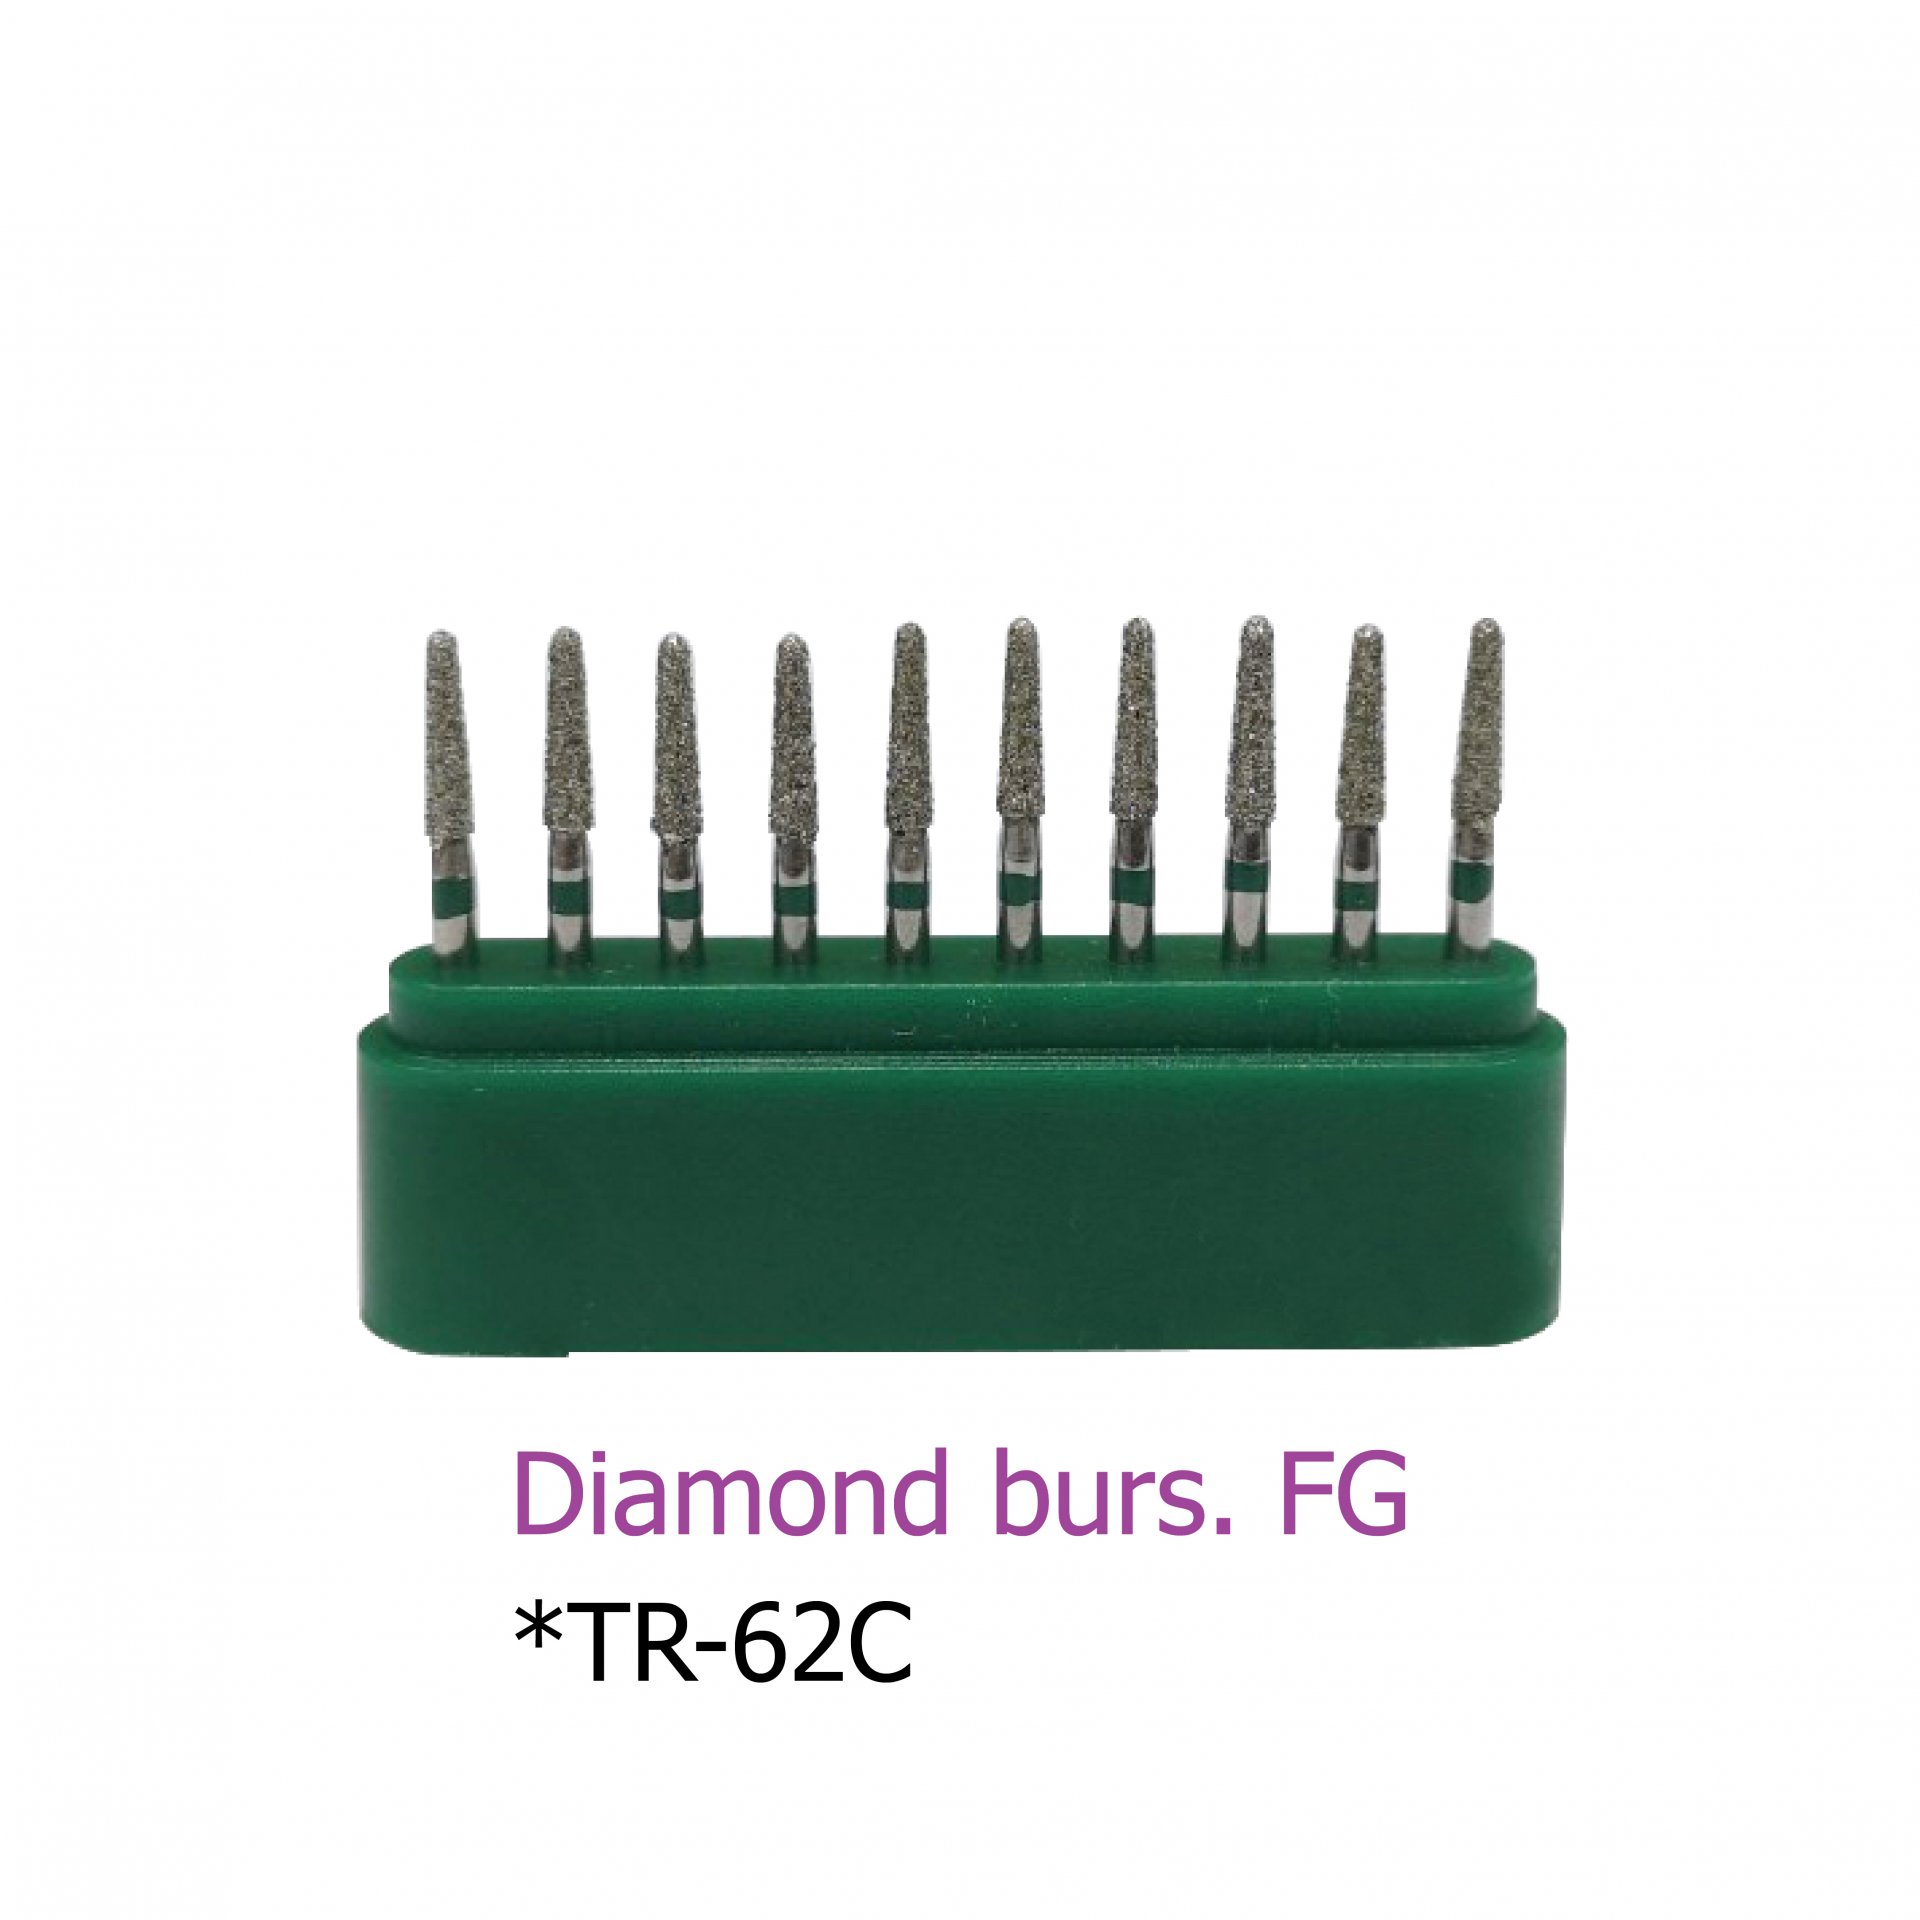 Diamond burs. FG *TR-62C